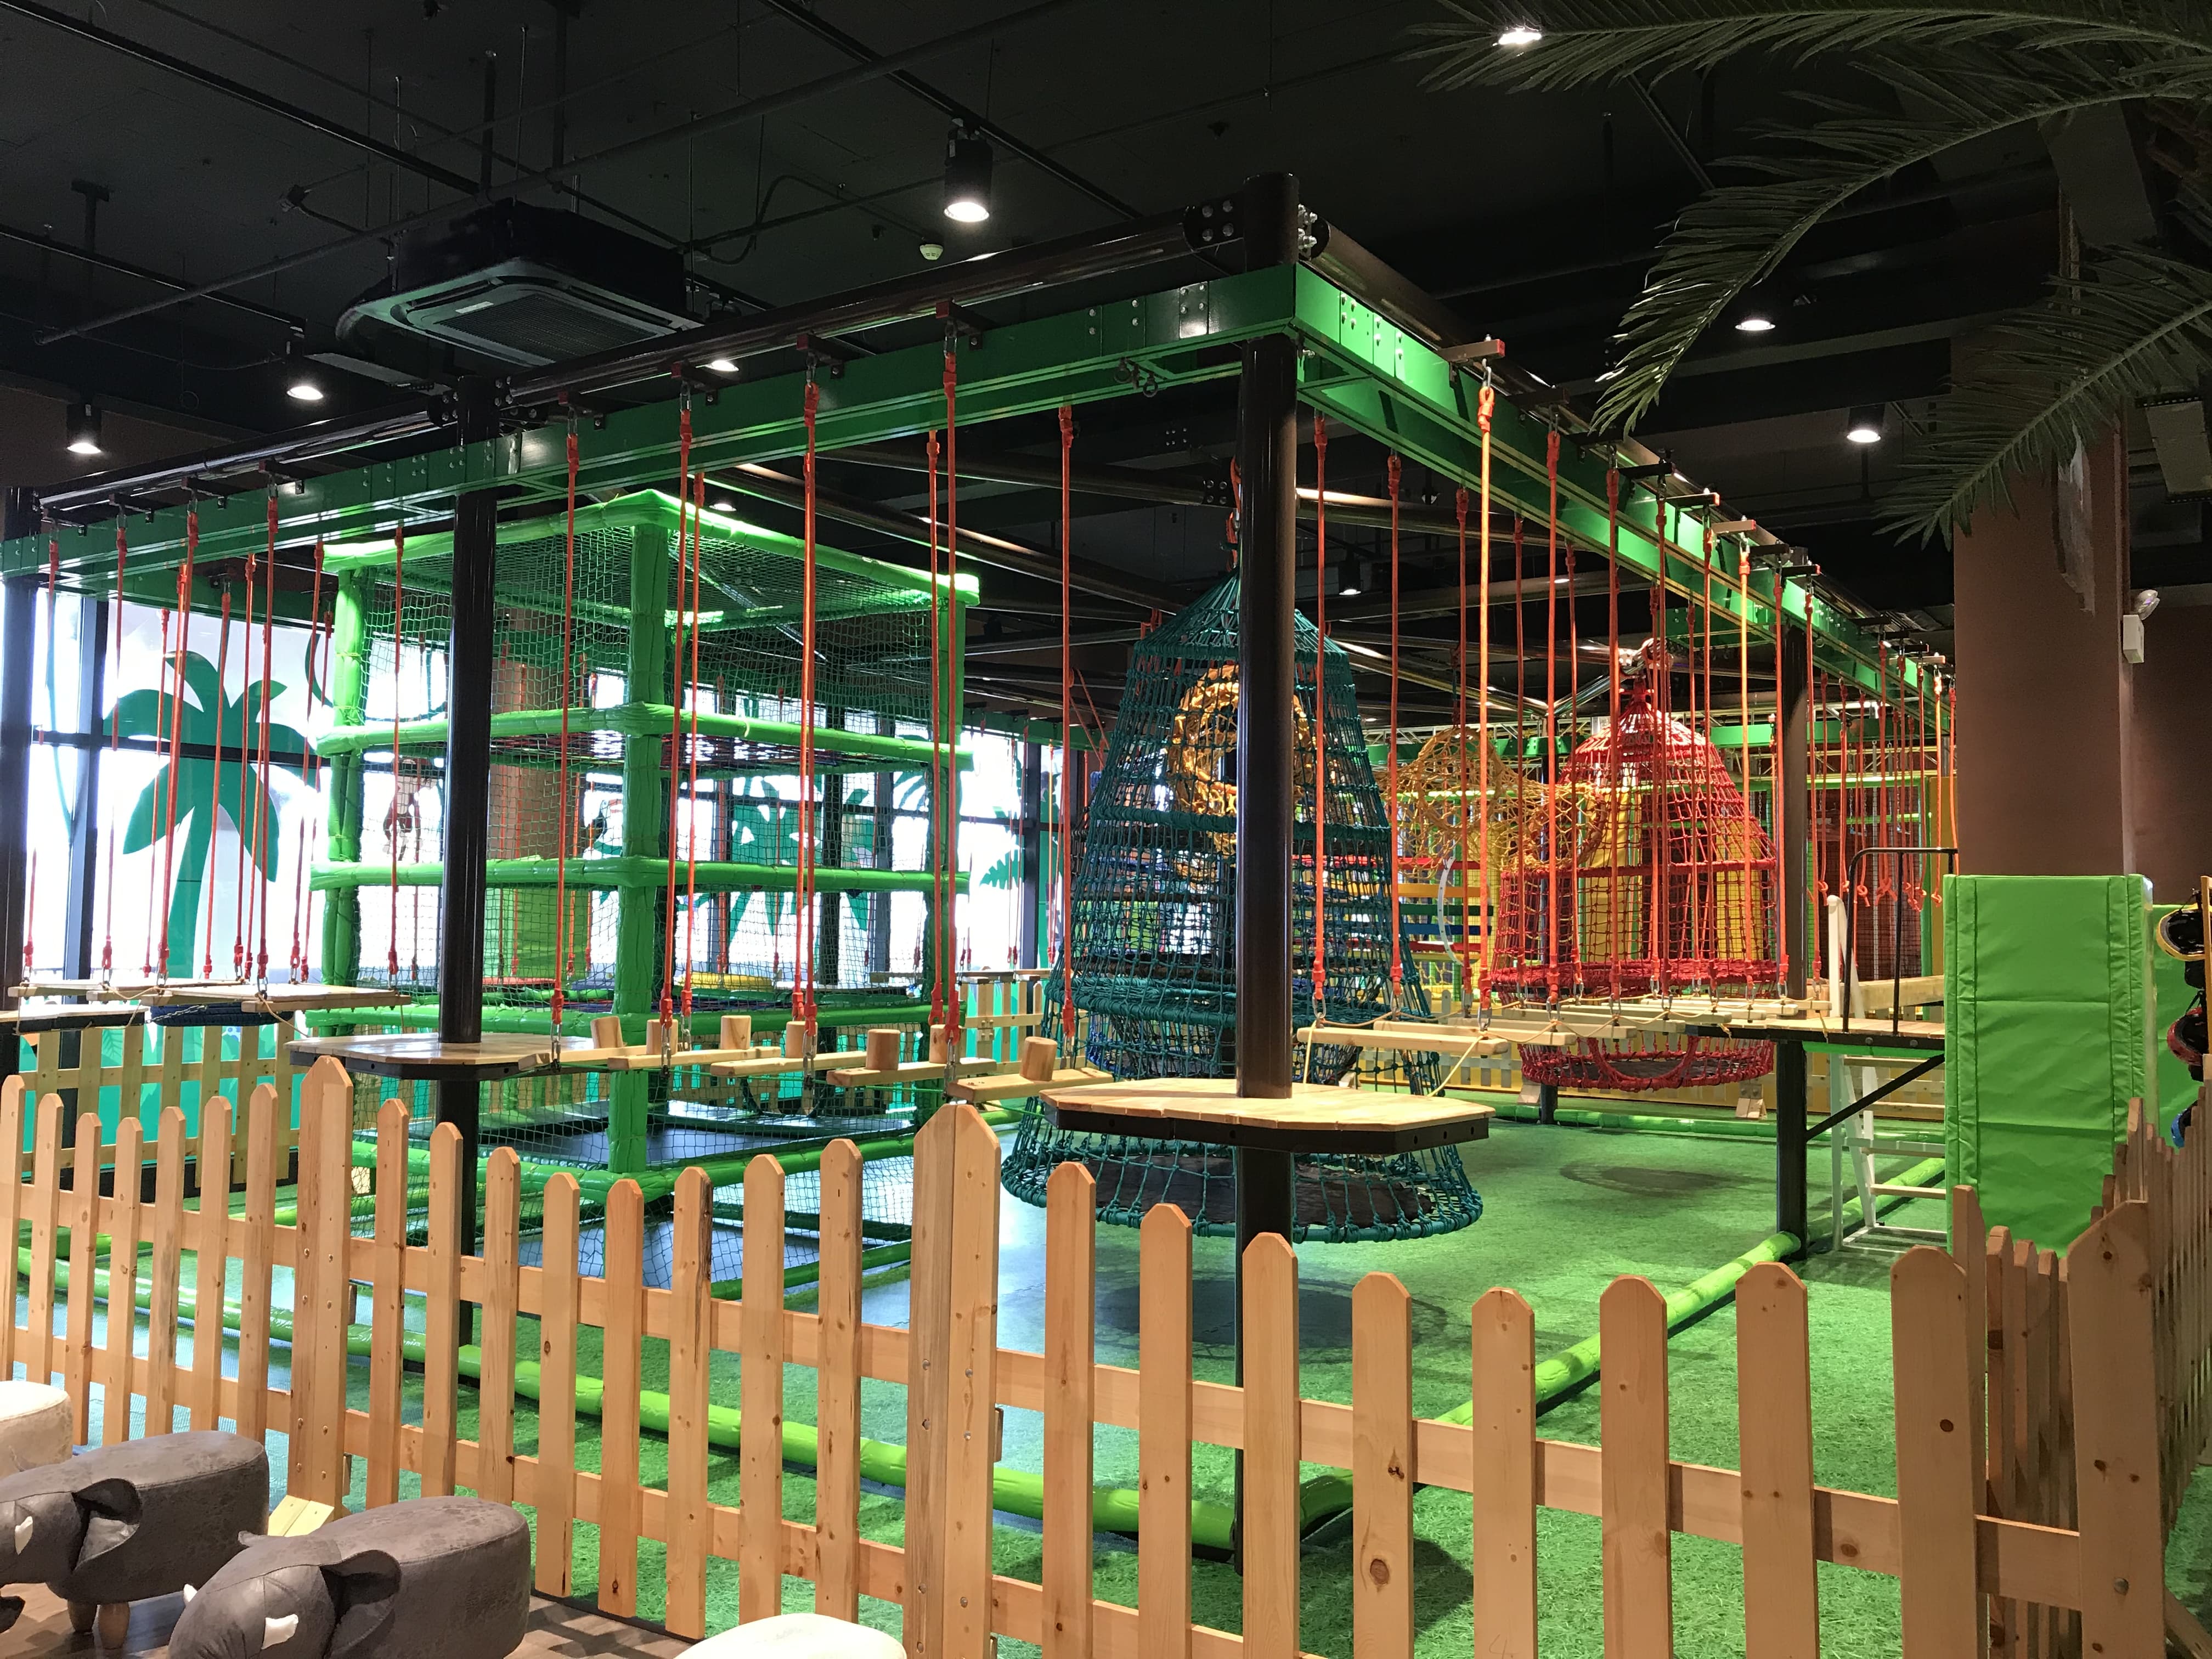 Corso di corda da parco giochi indoor in Cina